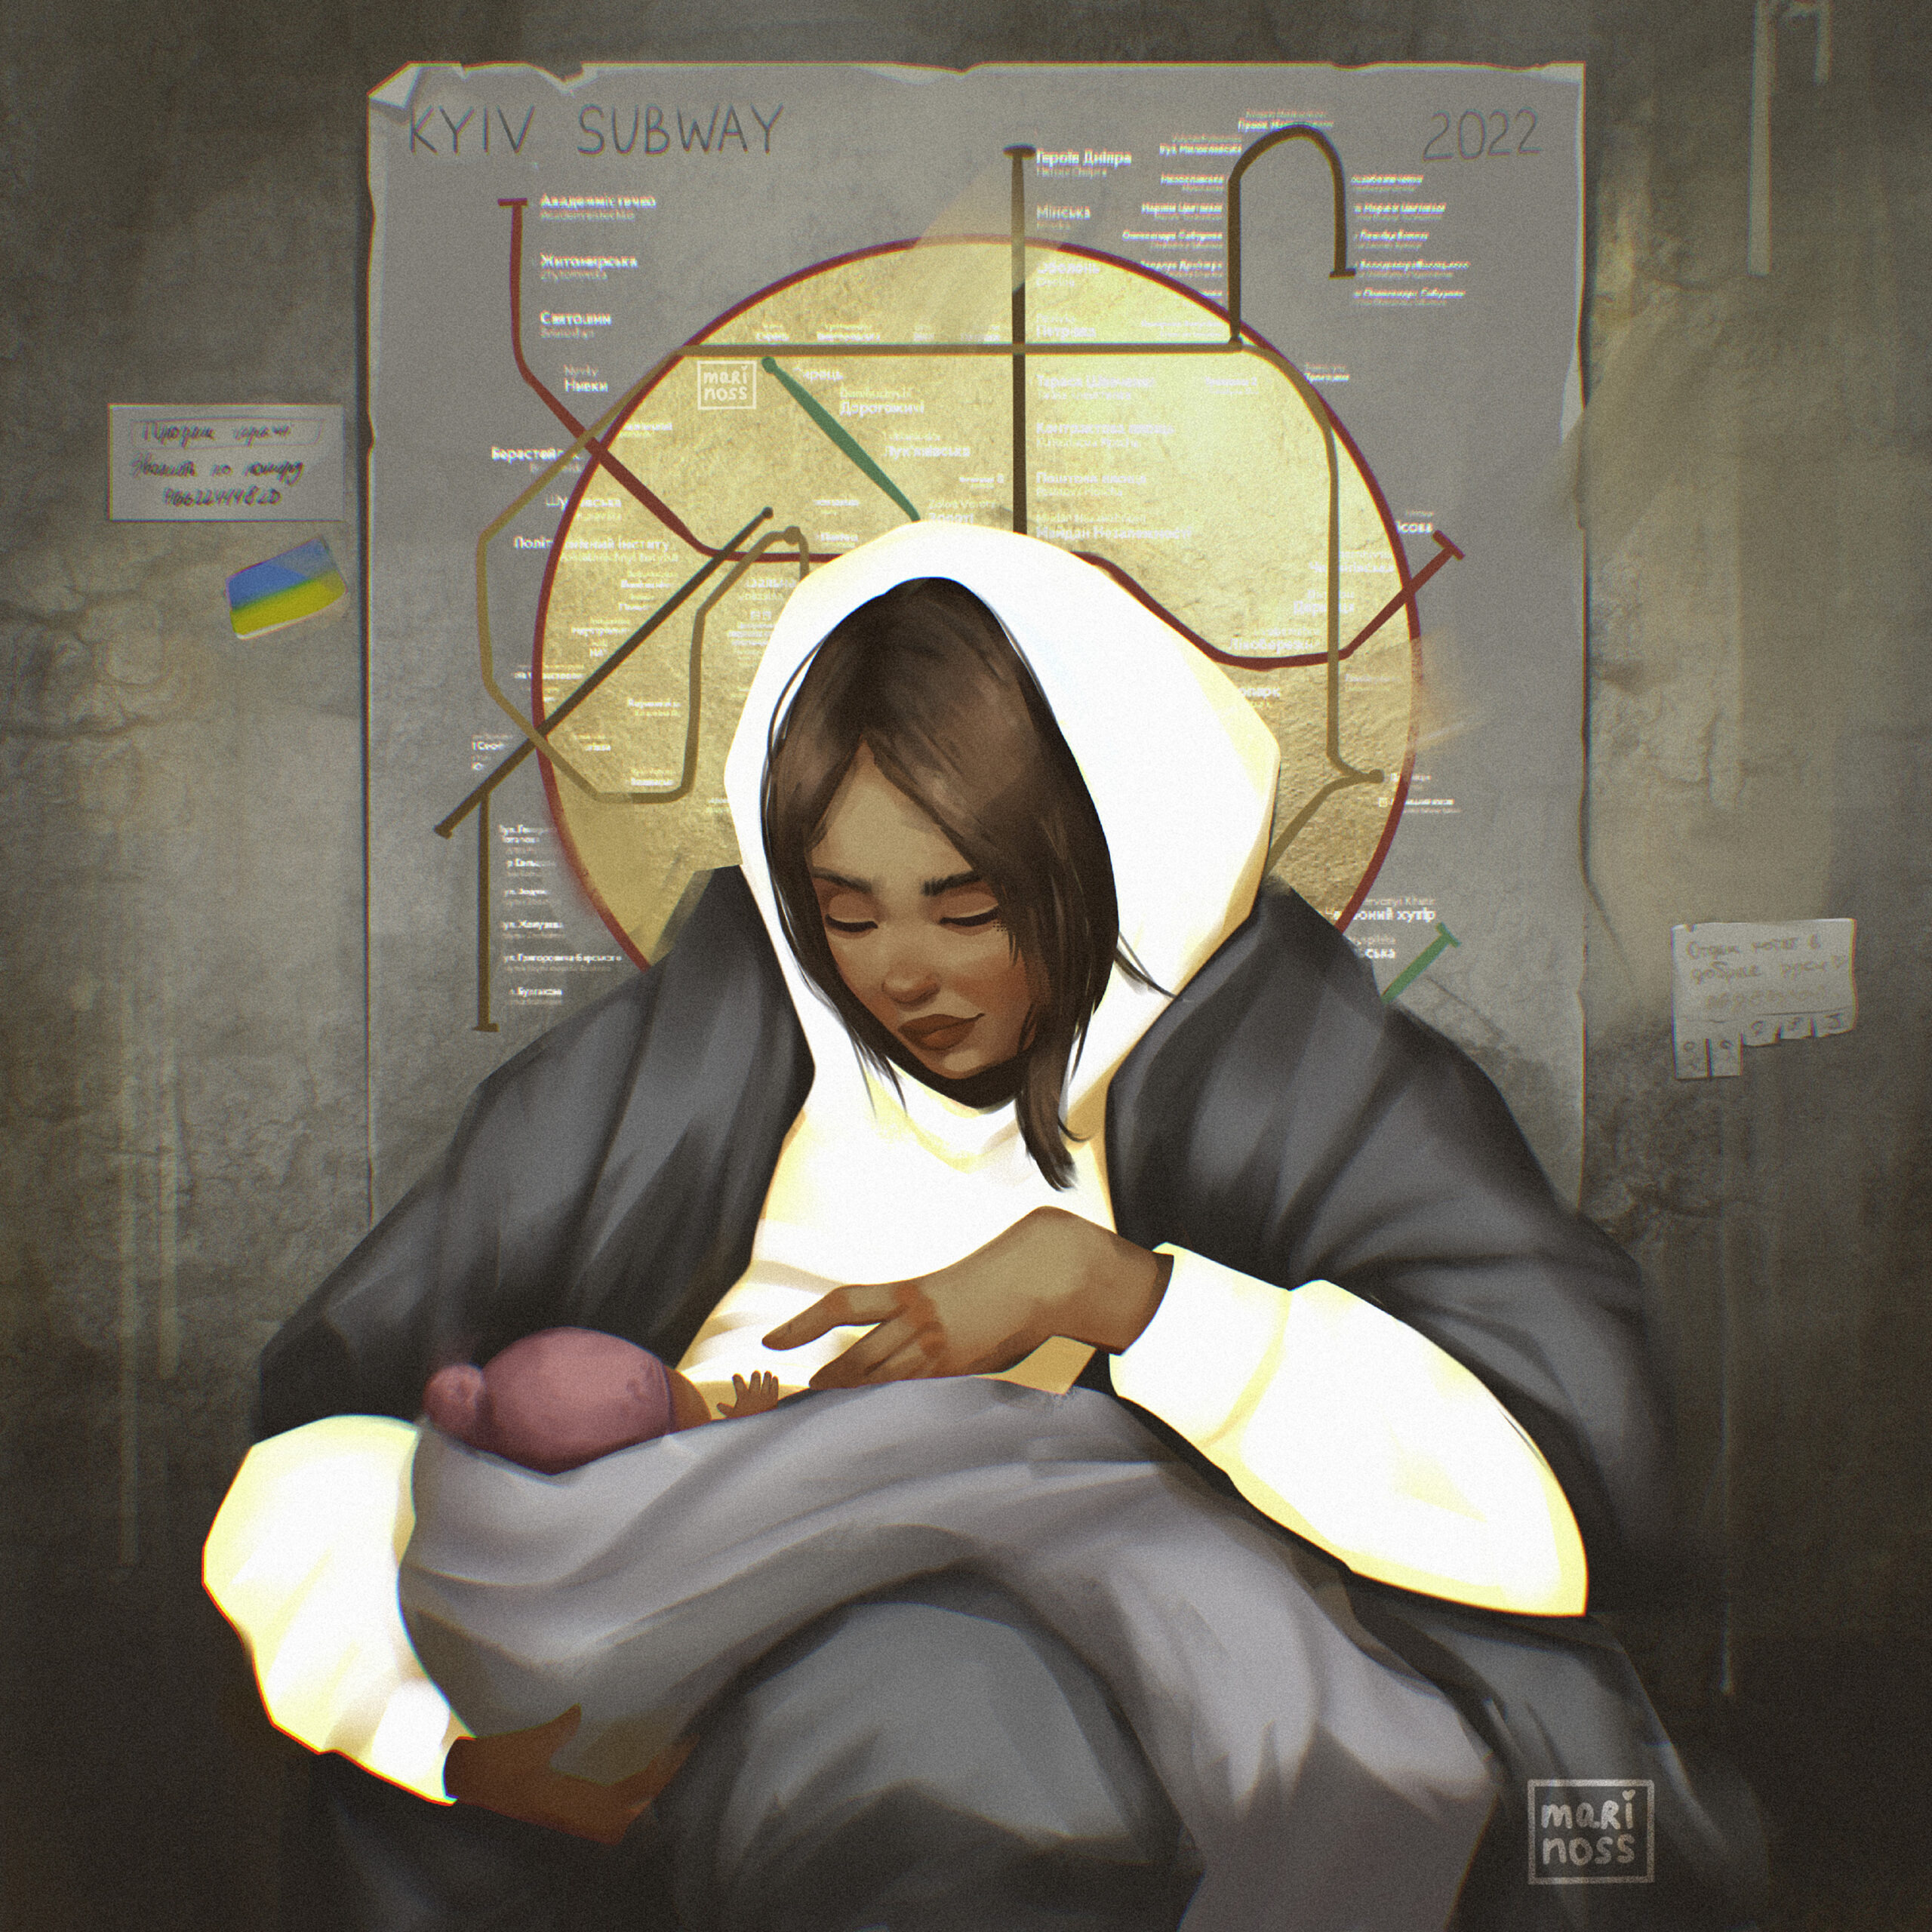 Maria und das Jesuskind in modernder version. Dahinter ist der Heiligenschein mit den U-Bahnlinien von Kyiv zu sehen.